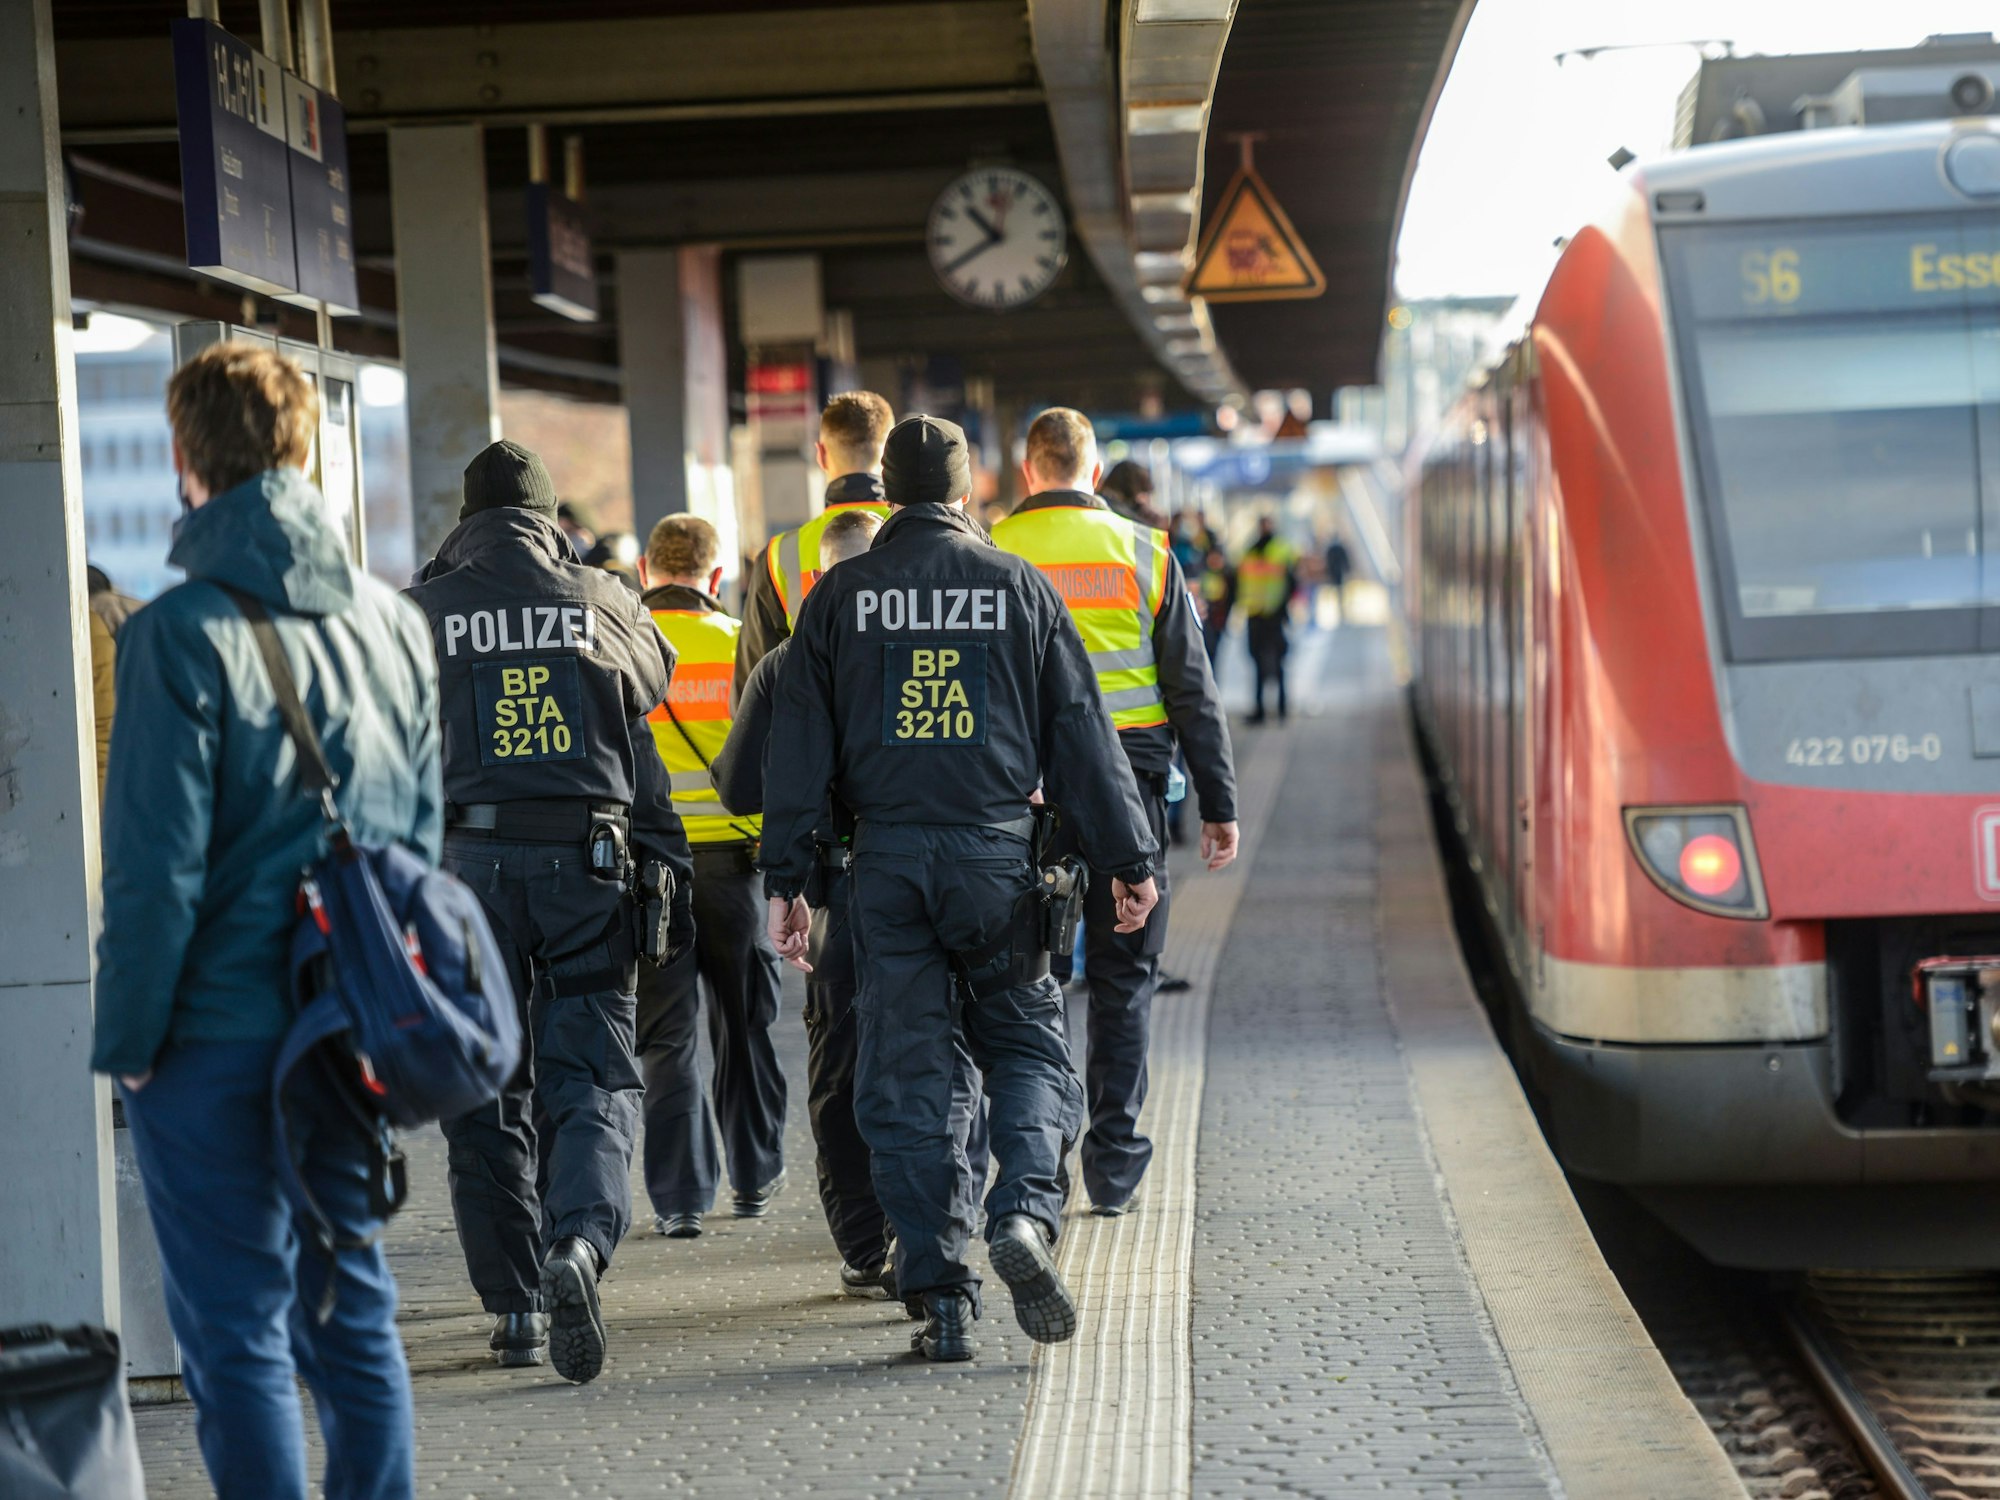 Polizei an einem Zug am Bahnhof Köln Messe/Deutz.